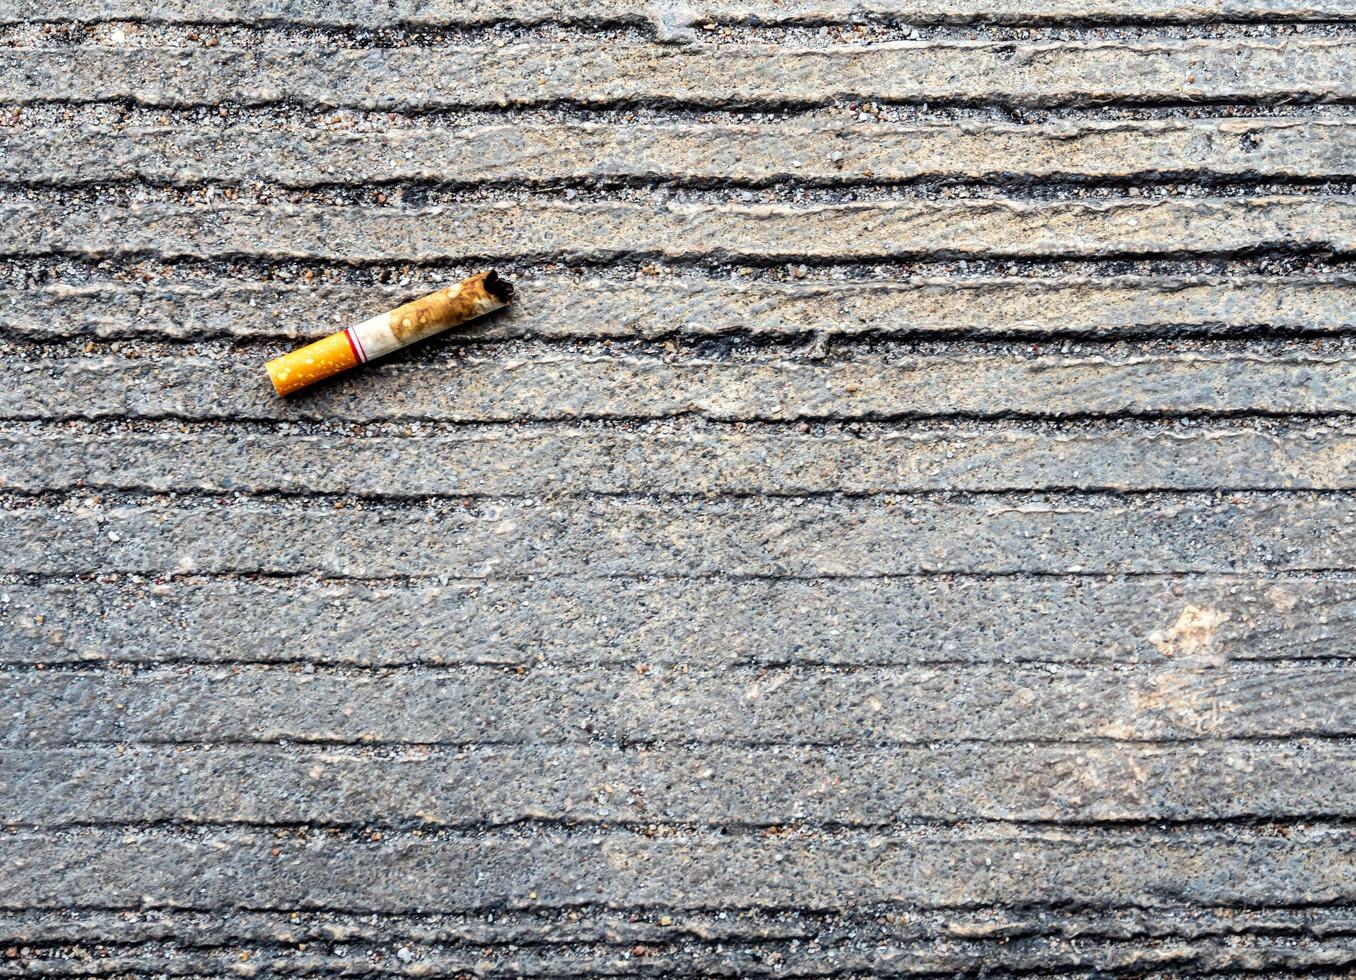 de sigarettenpeuk neergelaten op de betonnen vloer foto